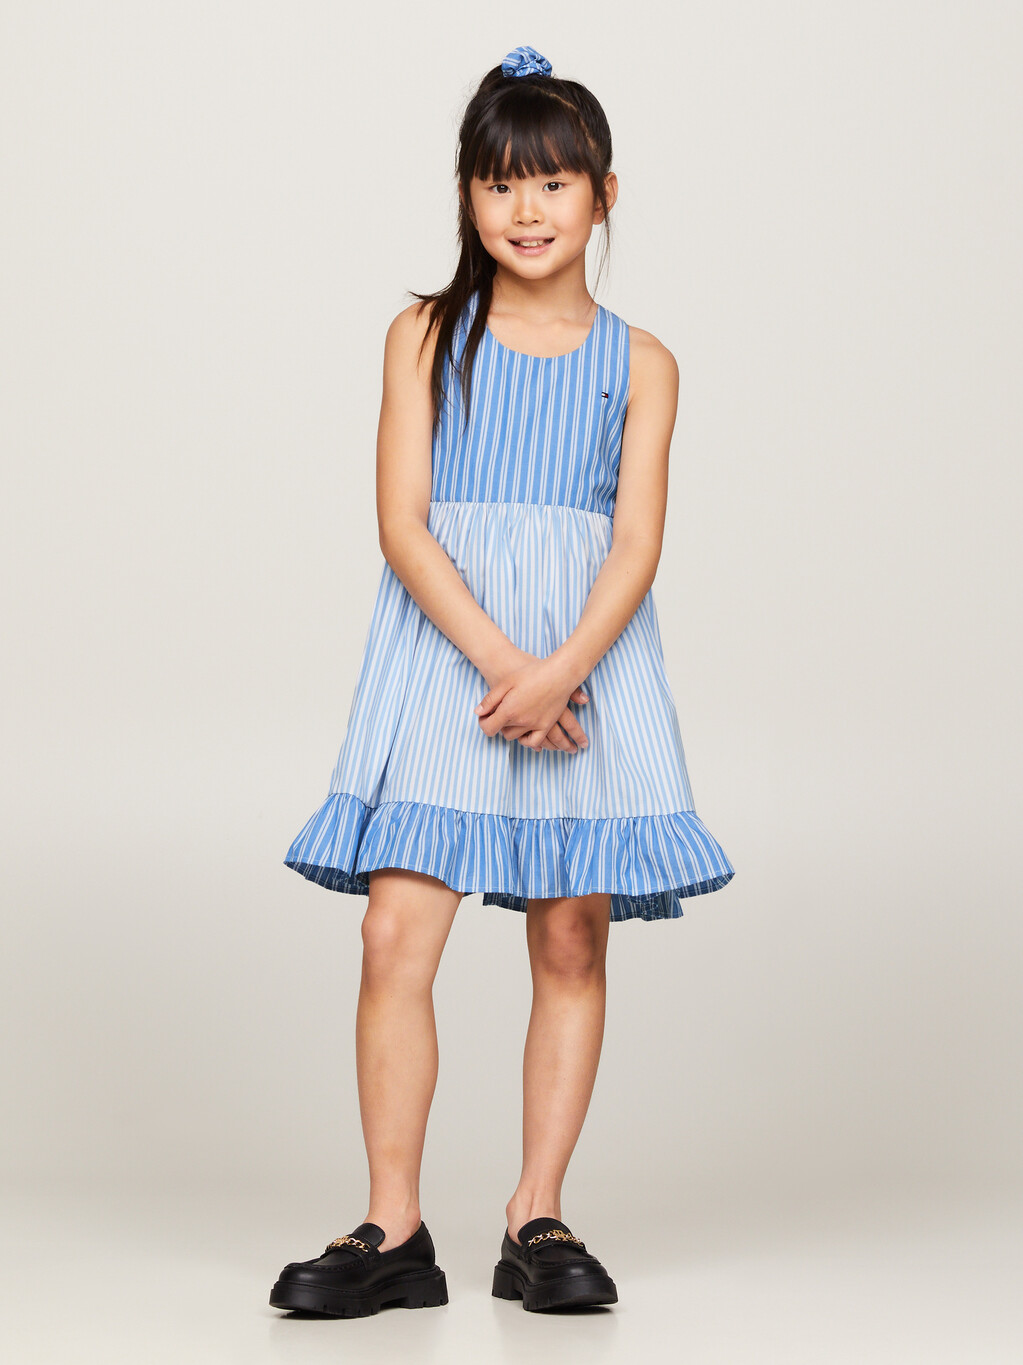 混合條紋工字背連身裙和髮圈套裝, Blue Spell Stripe / White, hi-res